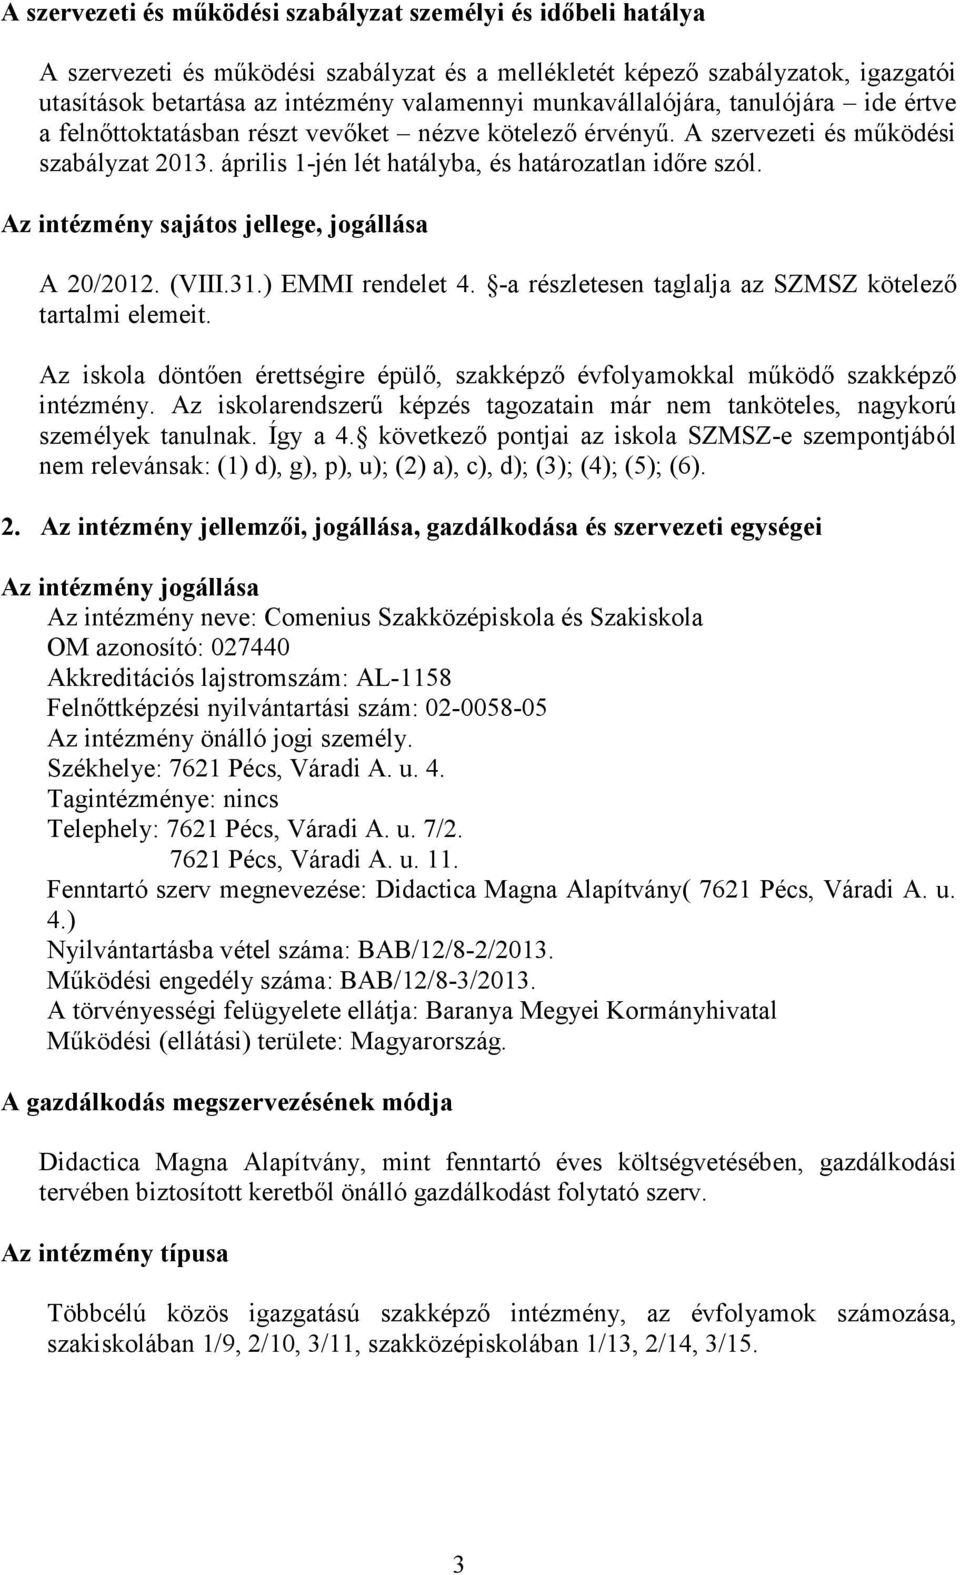 Az intézmény sajátos jellege, jogállása A 20/2012. (VIII.31.) EMMI rendelet 4. -a részletesen taglalja az SZMSZ kötelezı tartalmi elemeit.